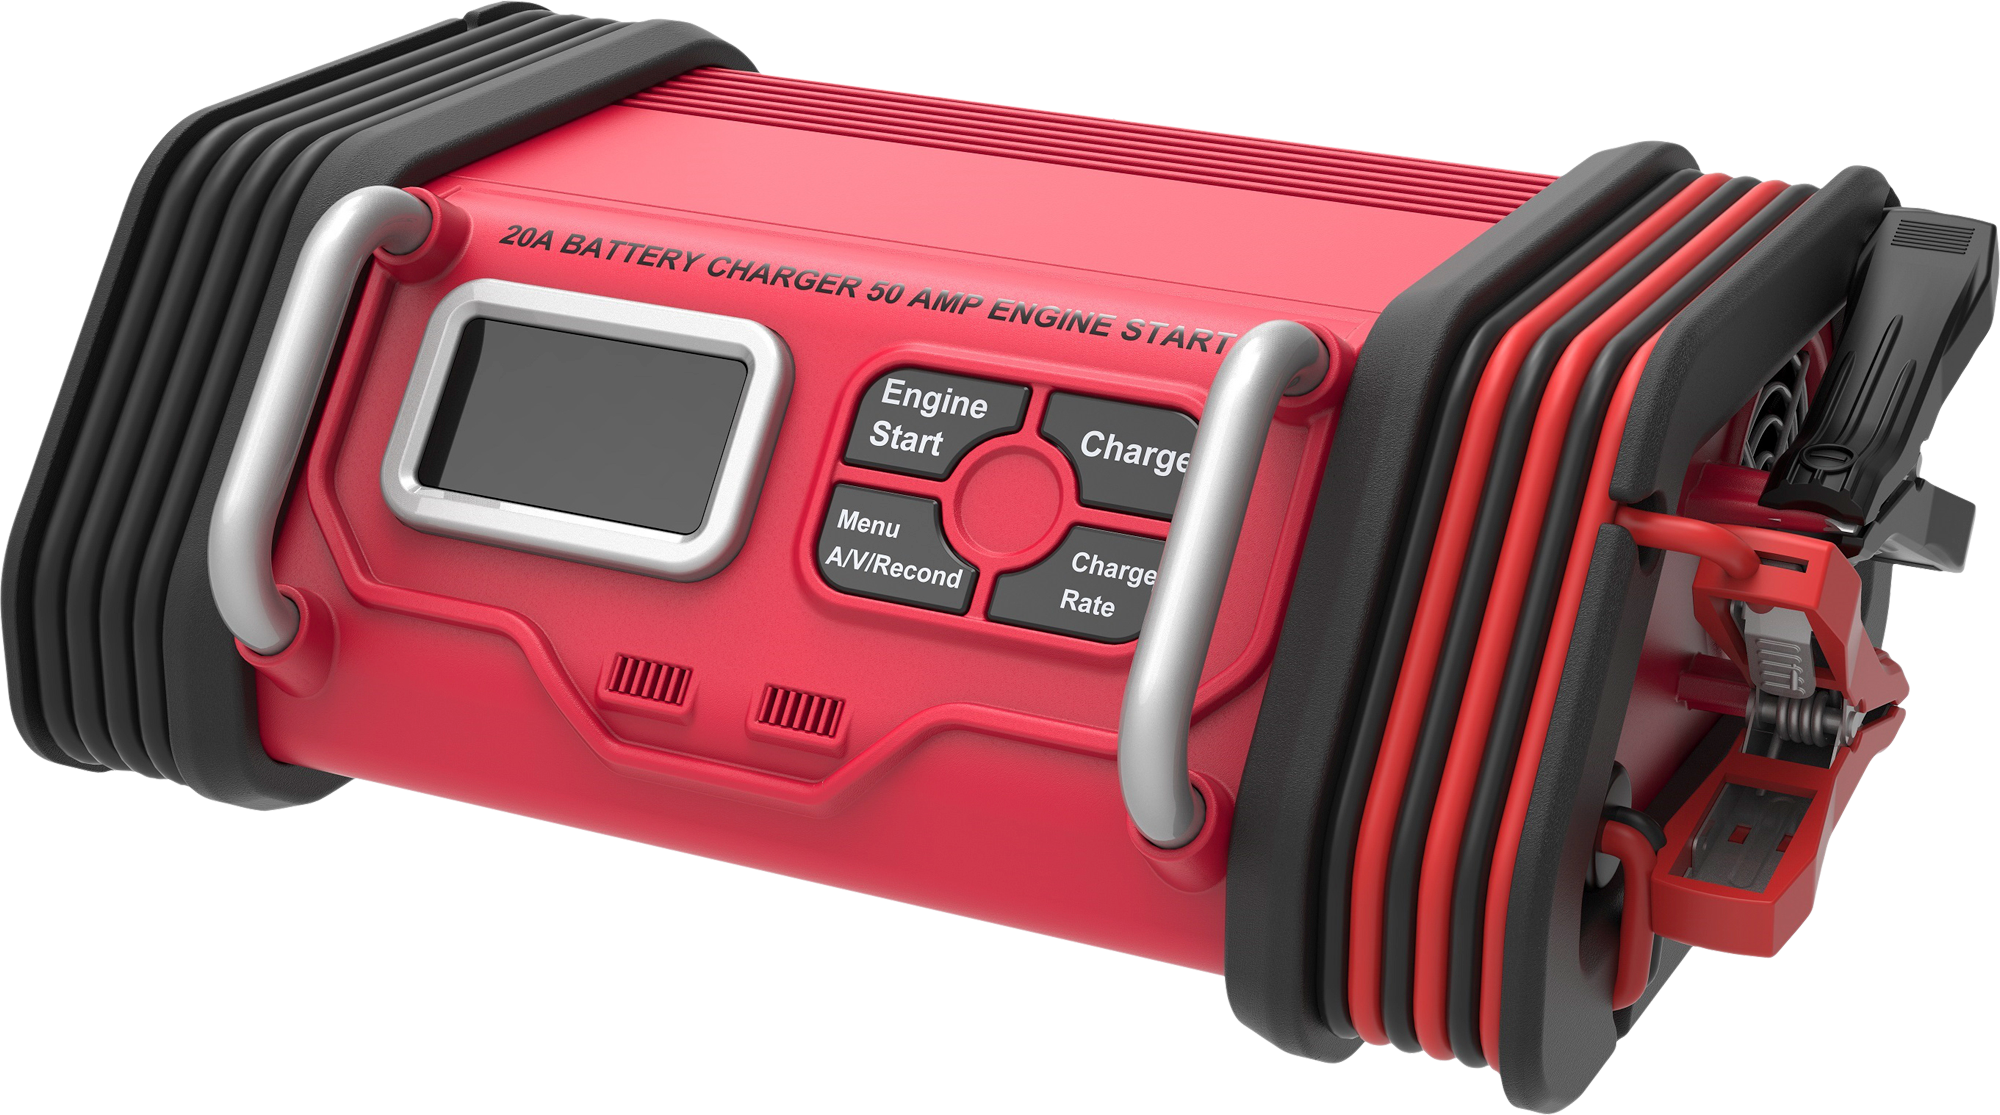 ABSAAR Batterieladegerät AB-4